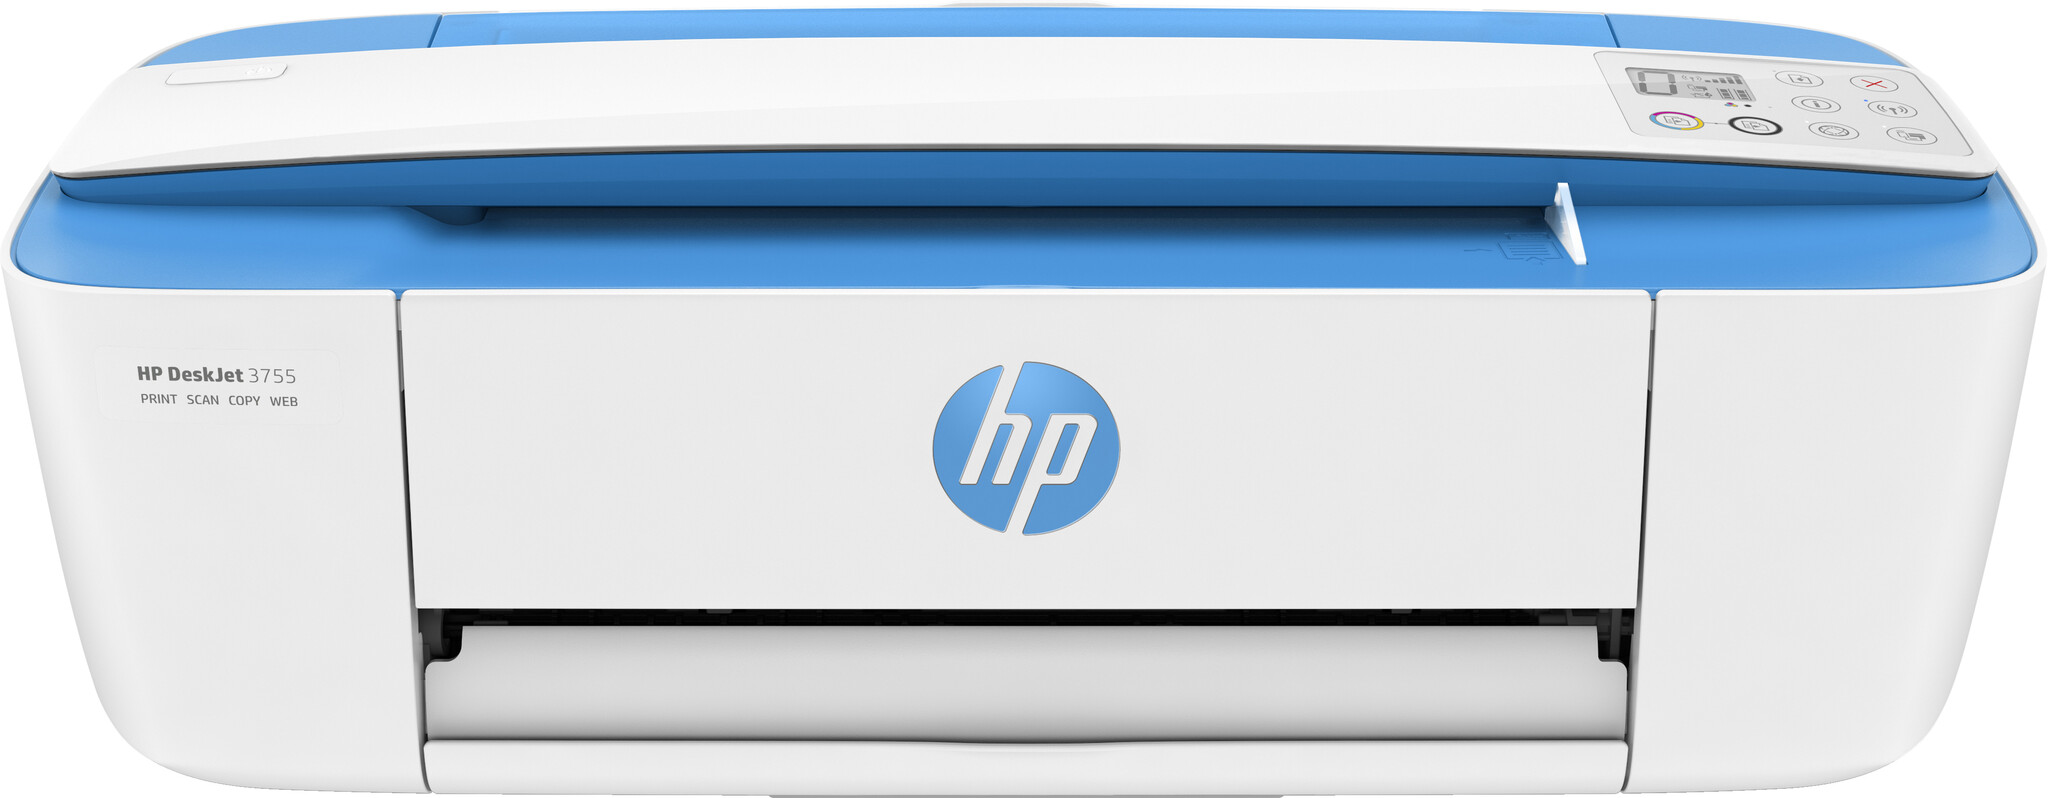 HP DeskJet 3760 Inkjet Printer – Blue / White (T8X19B#687) No ink #362126